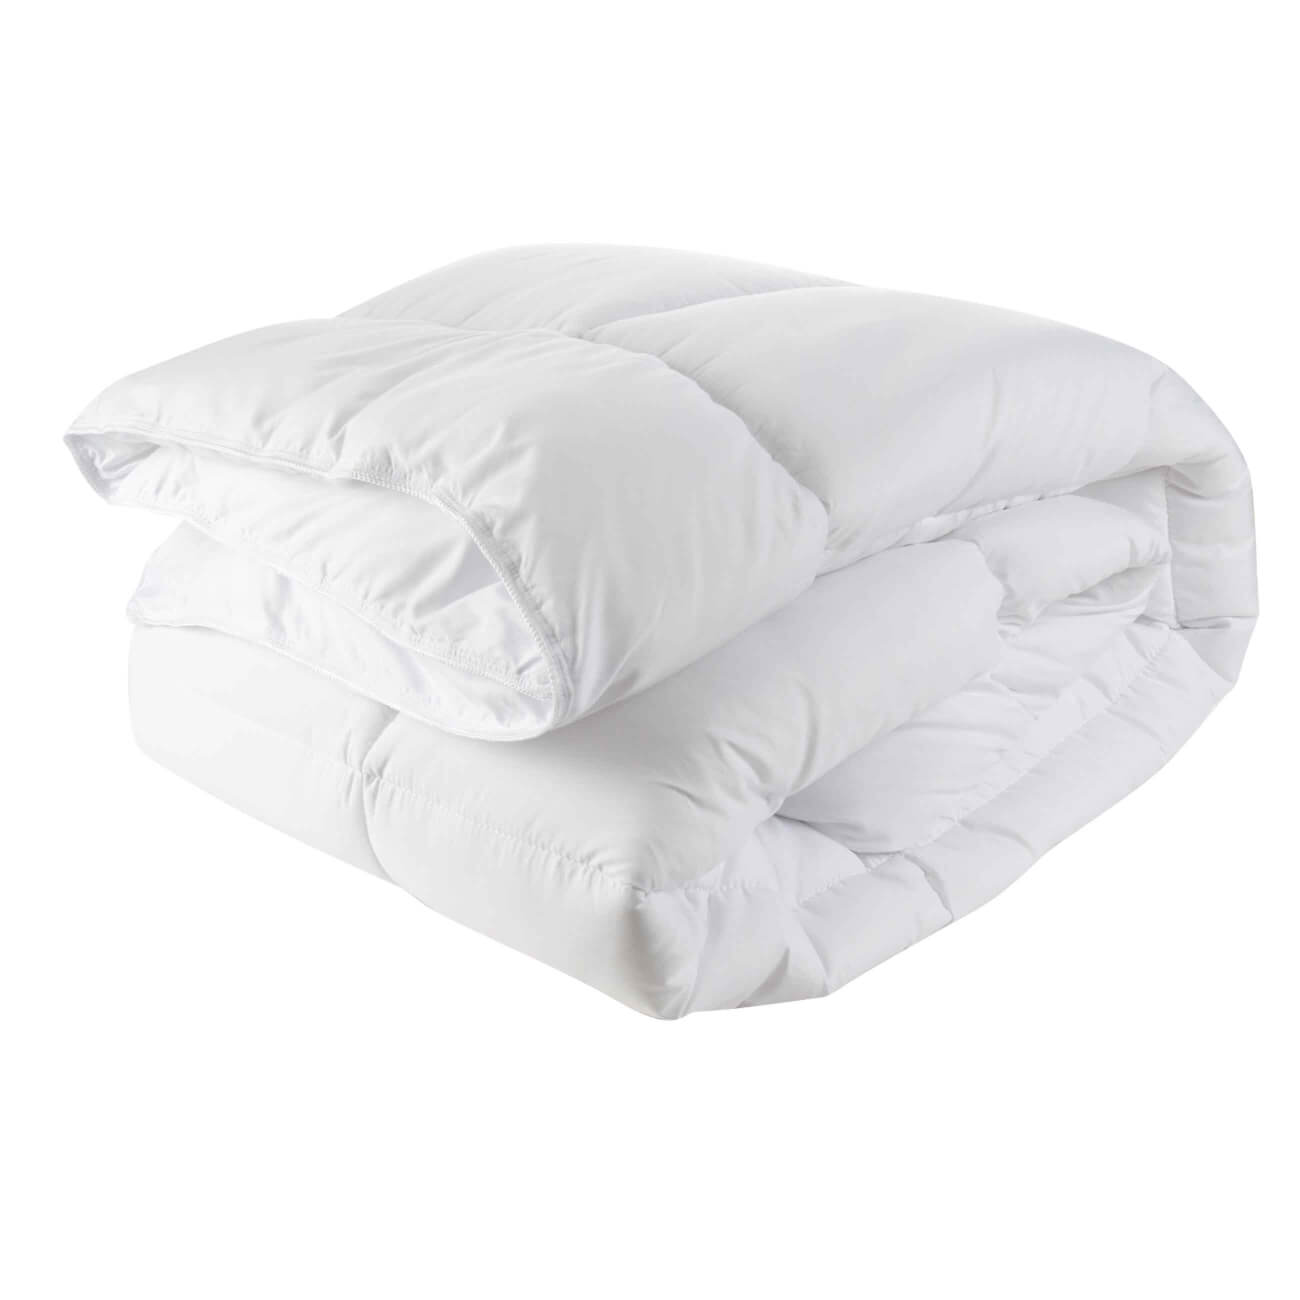 одеяло 200х220 см микрофибра super soft Одеяло, 200х220 см, микрофибра, Simply soft